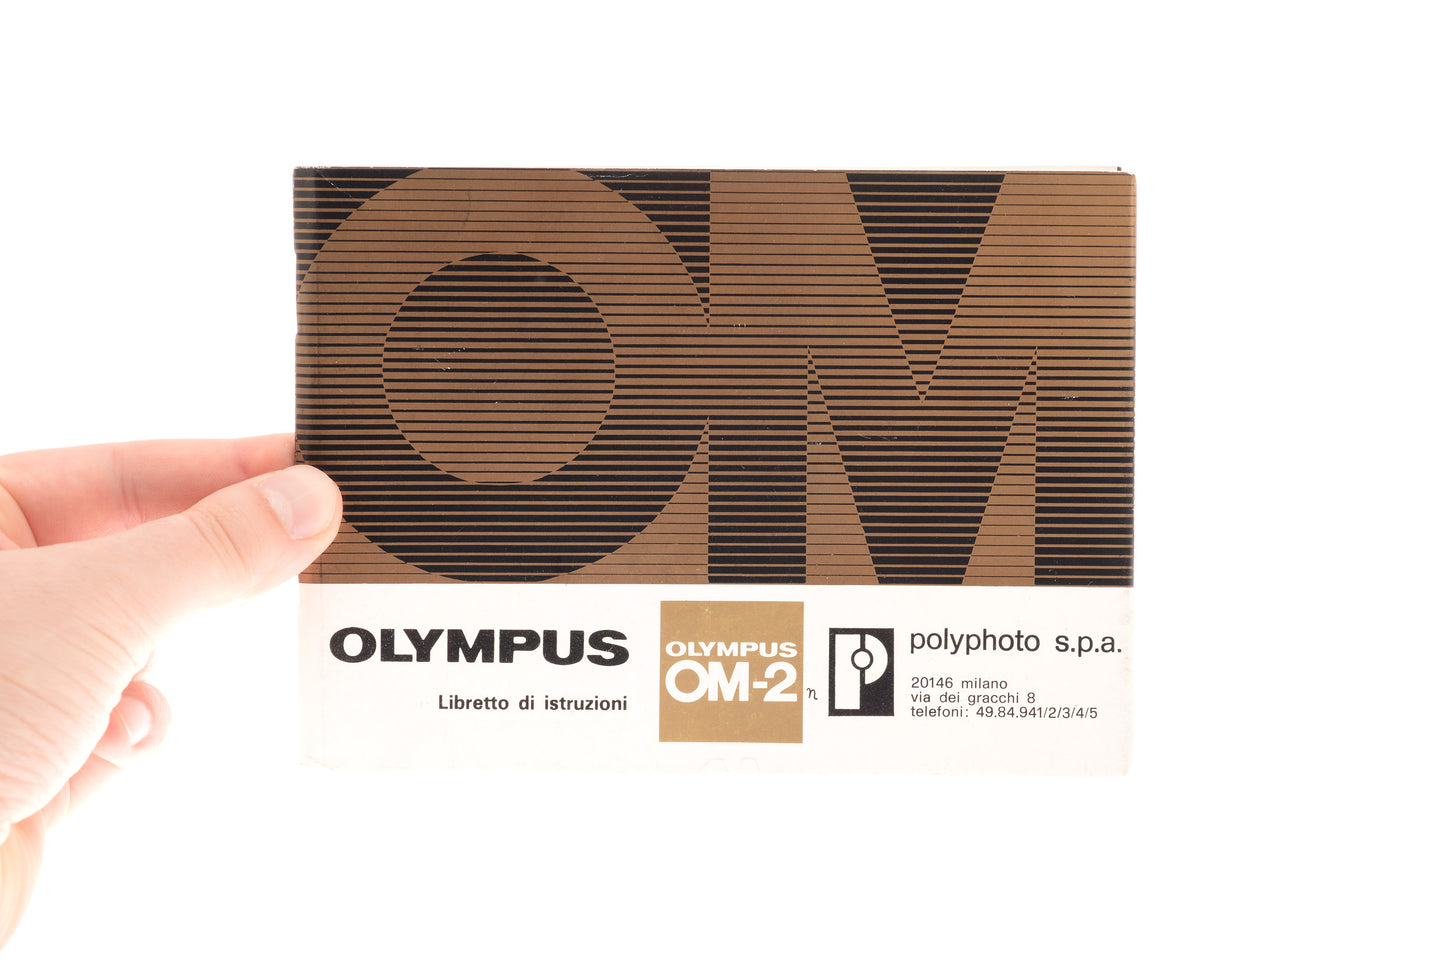 Olympus OM-2 Libretto di istruzioni